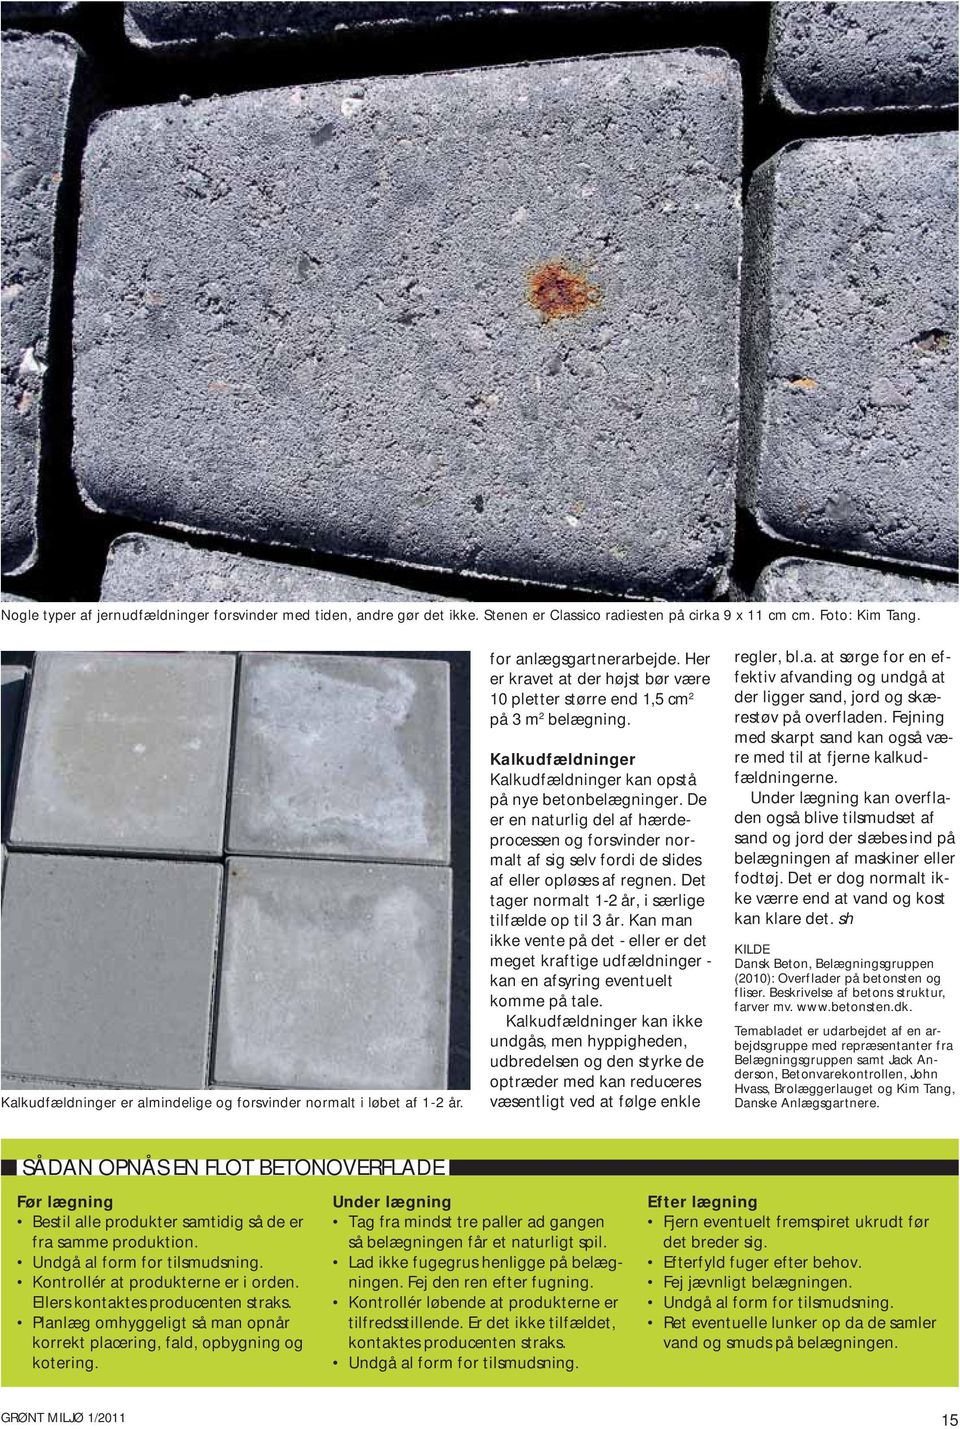 Kalkudfældninger Kalkudfældninger kan opstå på nye betonbelægninger. De er en naturlig del af hærdeprocessen og forsvinder normalt af sig selv fordi de slides af eller opløses af regnen.